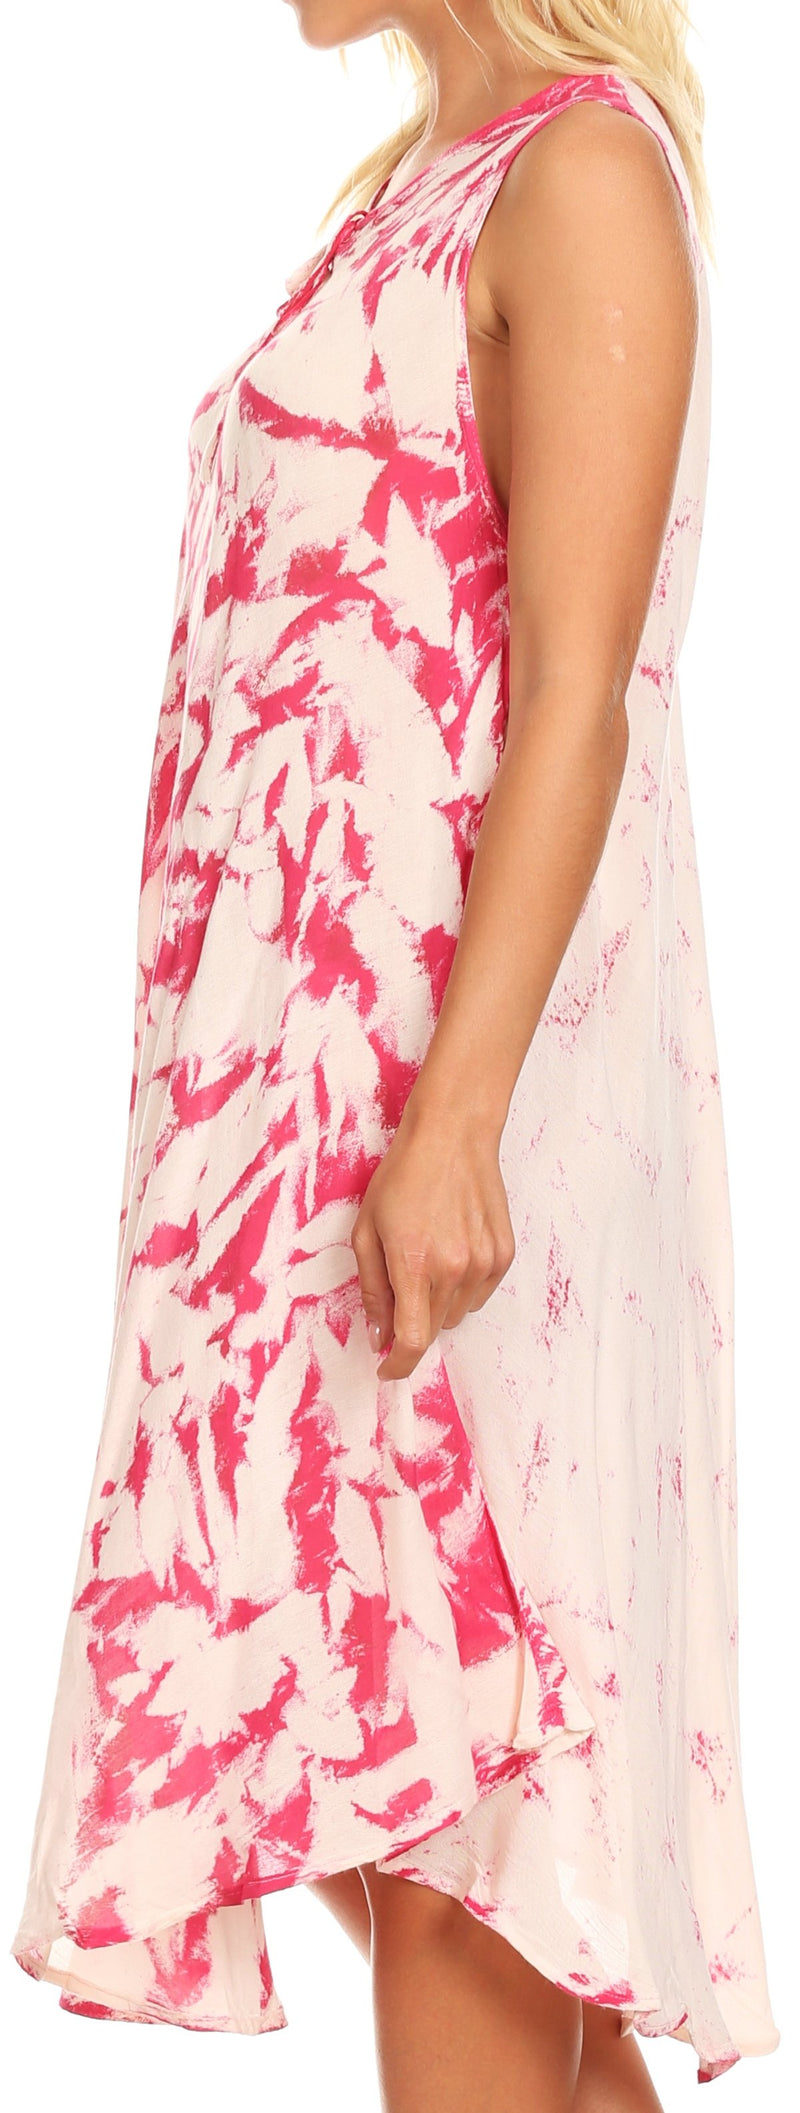 Sakkas Anni Women's Summer Casual Midi Sleeveless Loose Tie-dye Tank Sundress